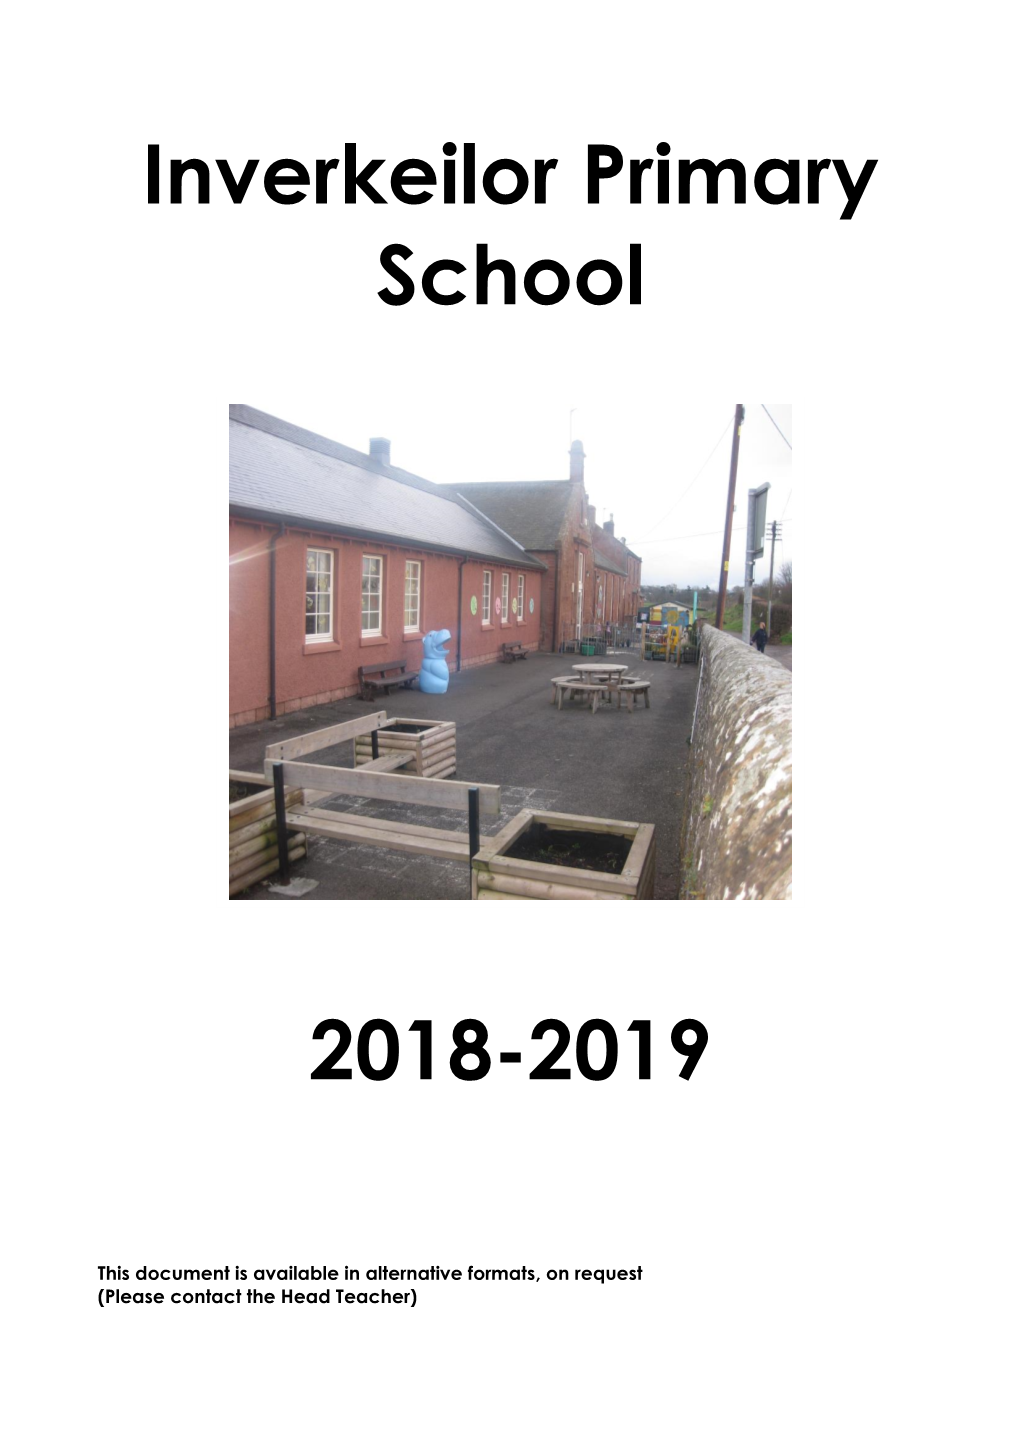 Inverkeilor Primary School Handbook 2018/19